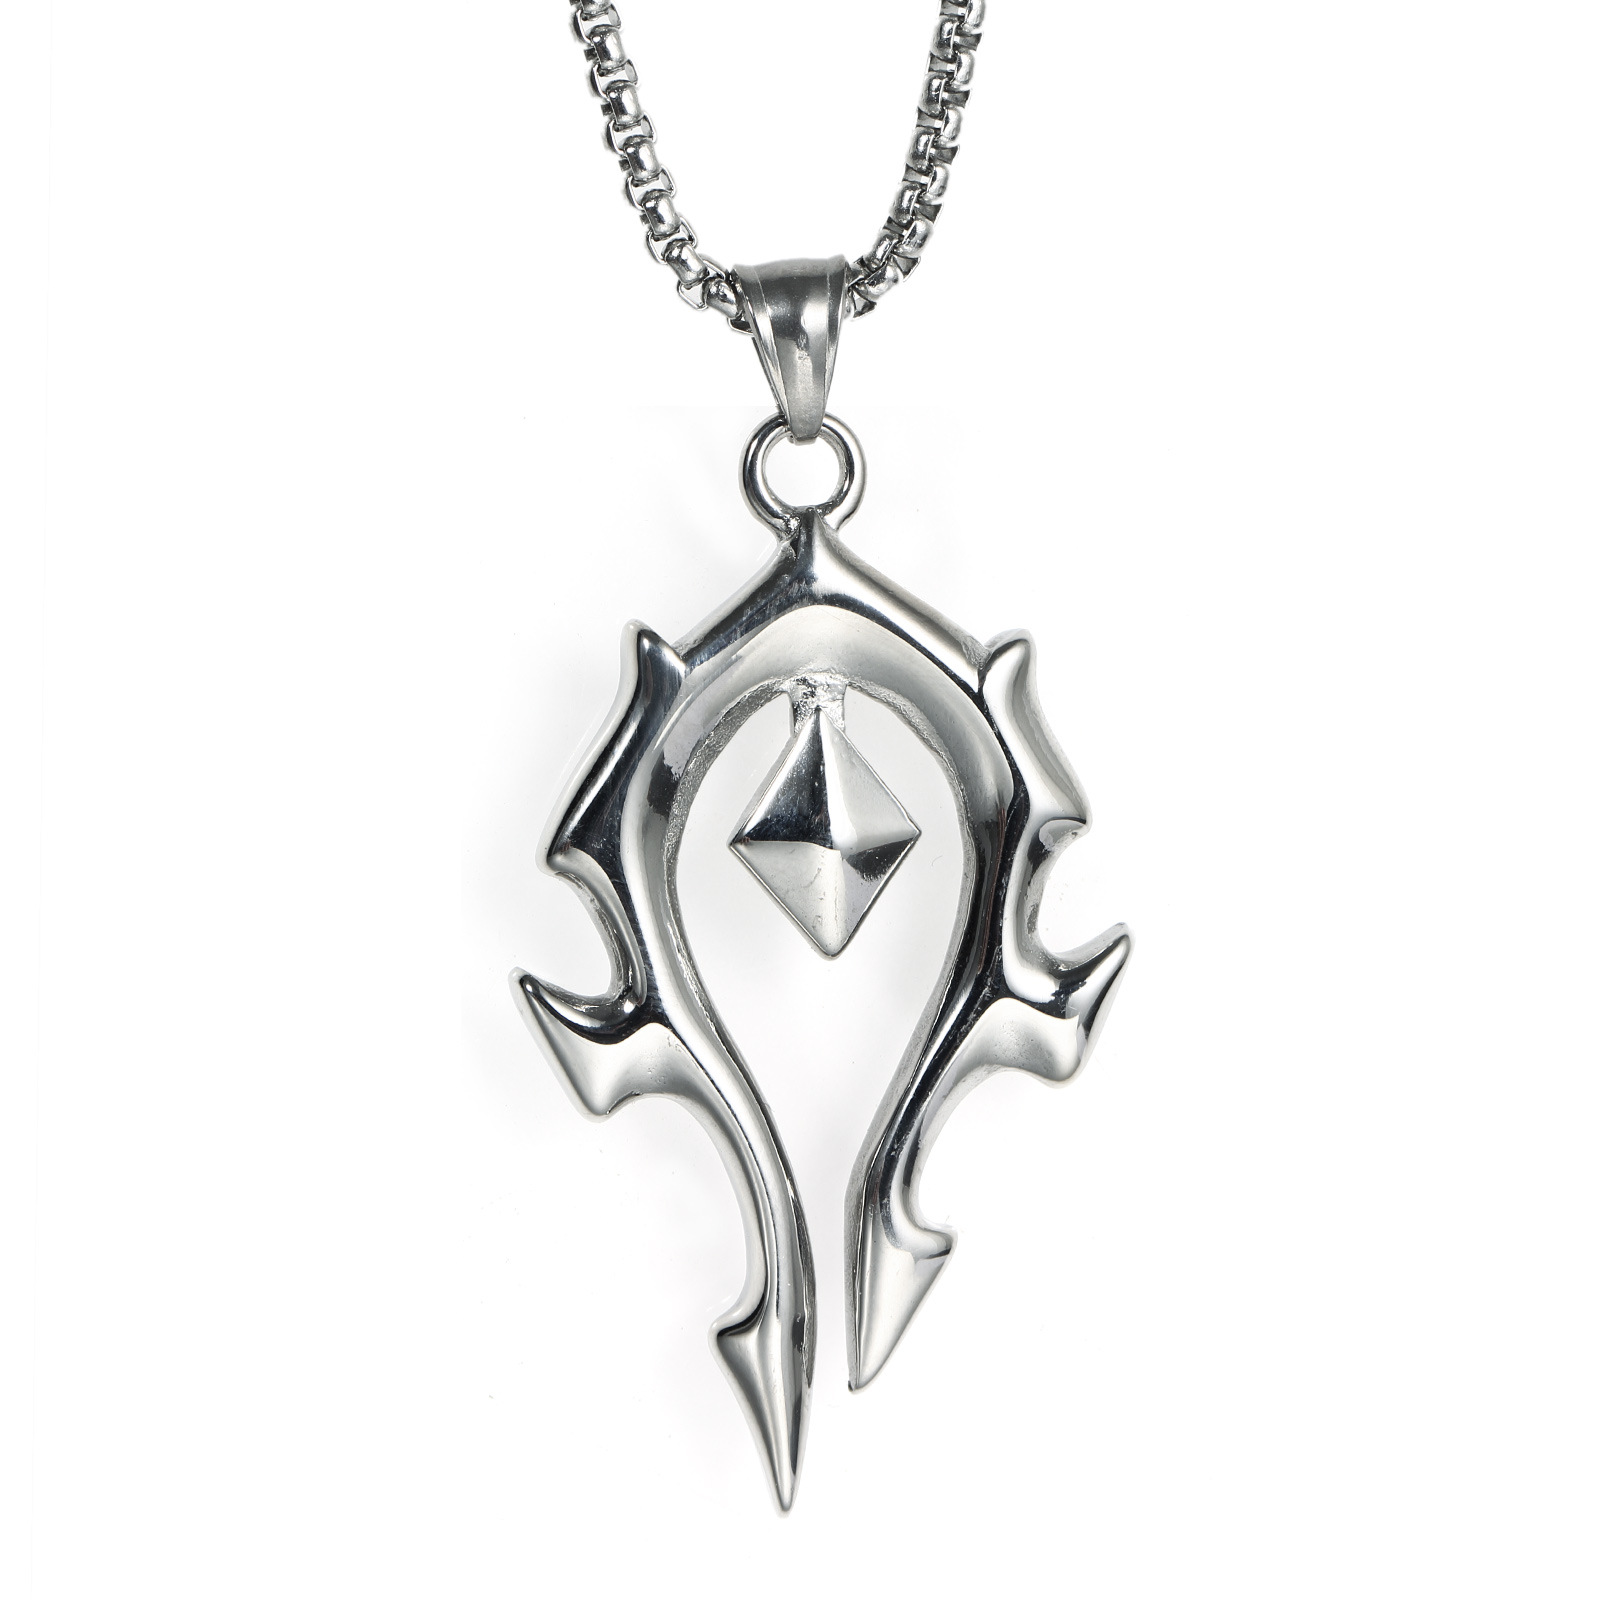 魔兽玩家周边联盟部落阵营logo项链吊坠挂件 复古风格 金属材质